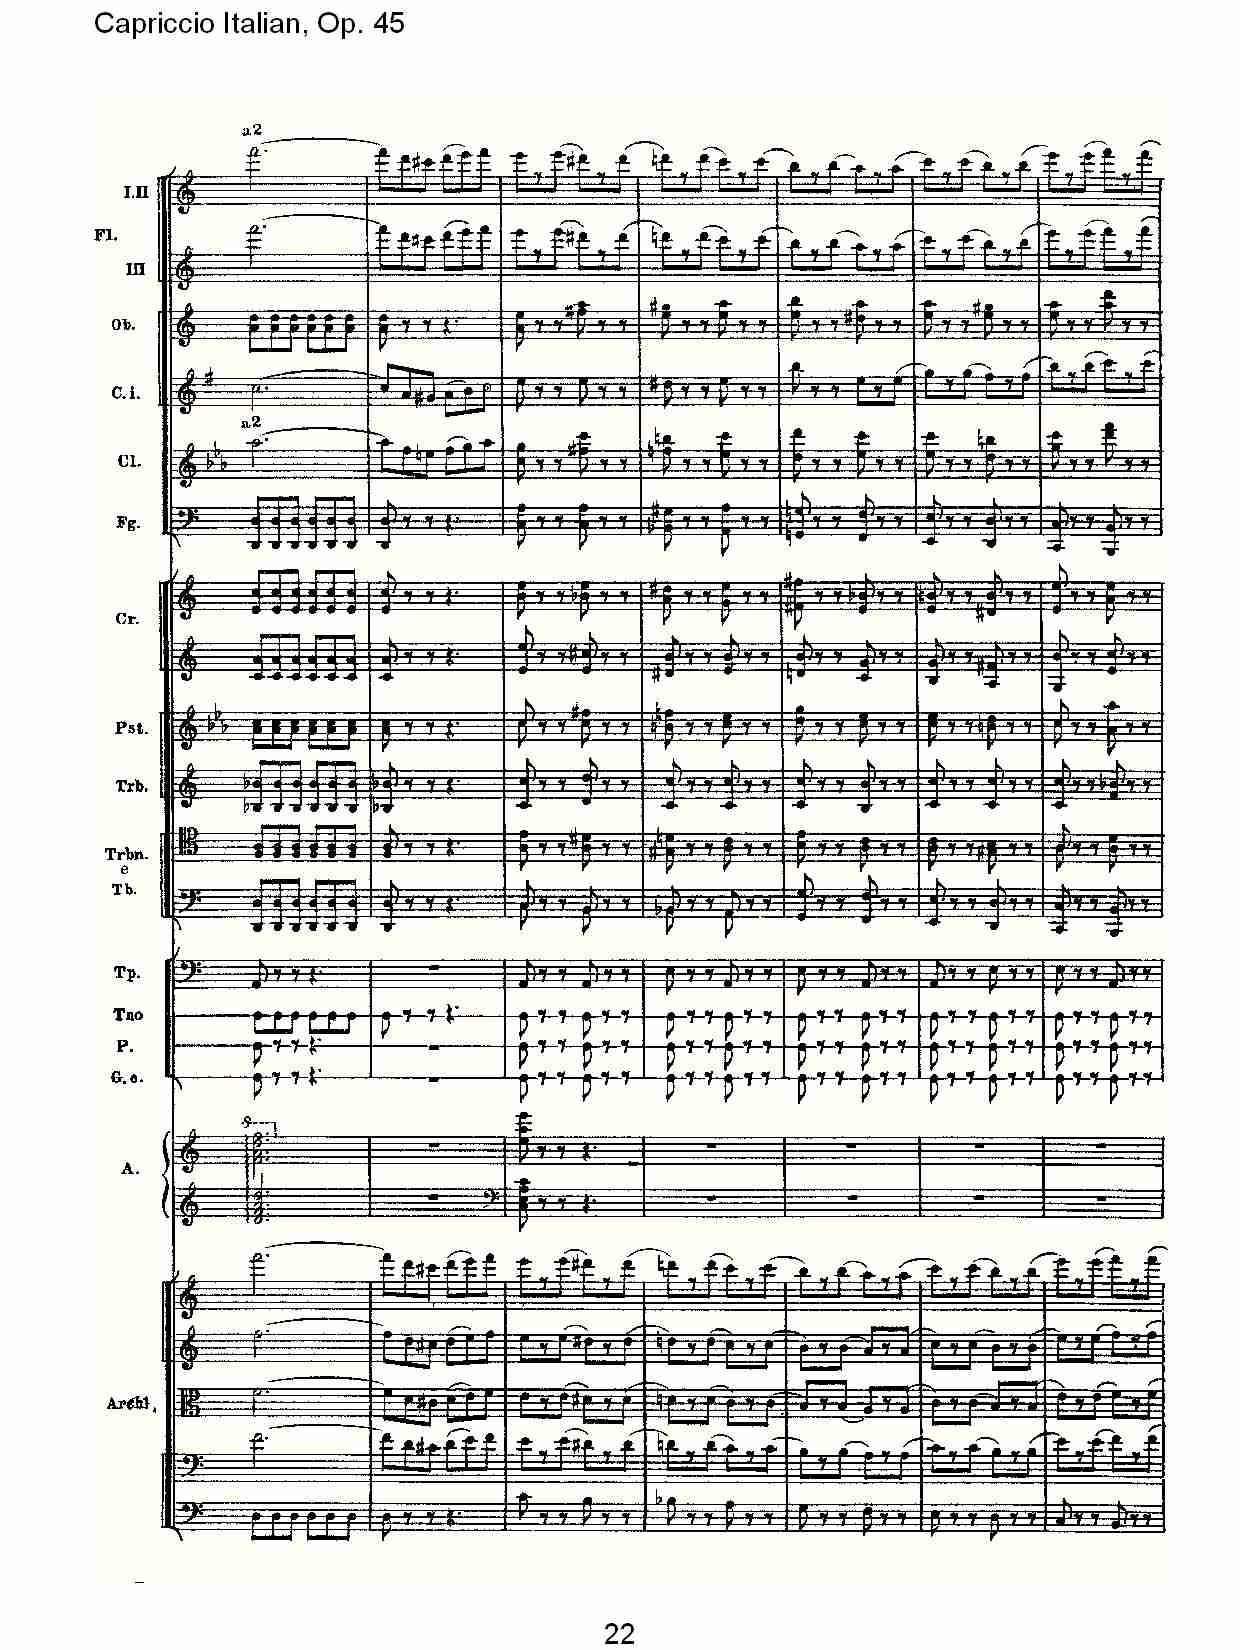 意大利幻想曲 Op 45第二部 五 总谱 歌谱简谱大全